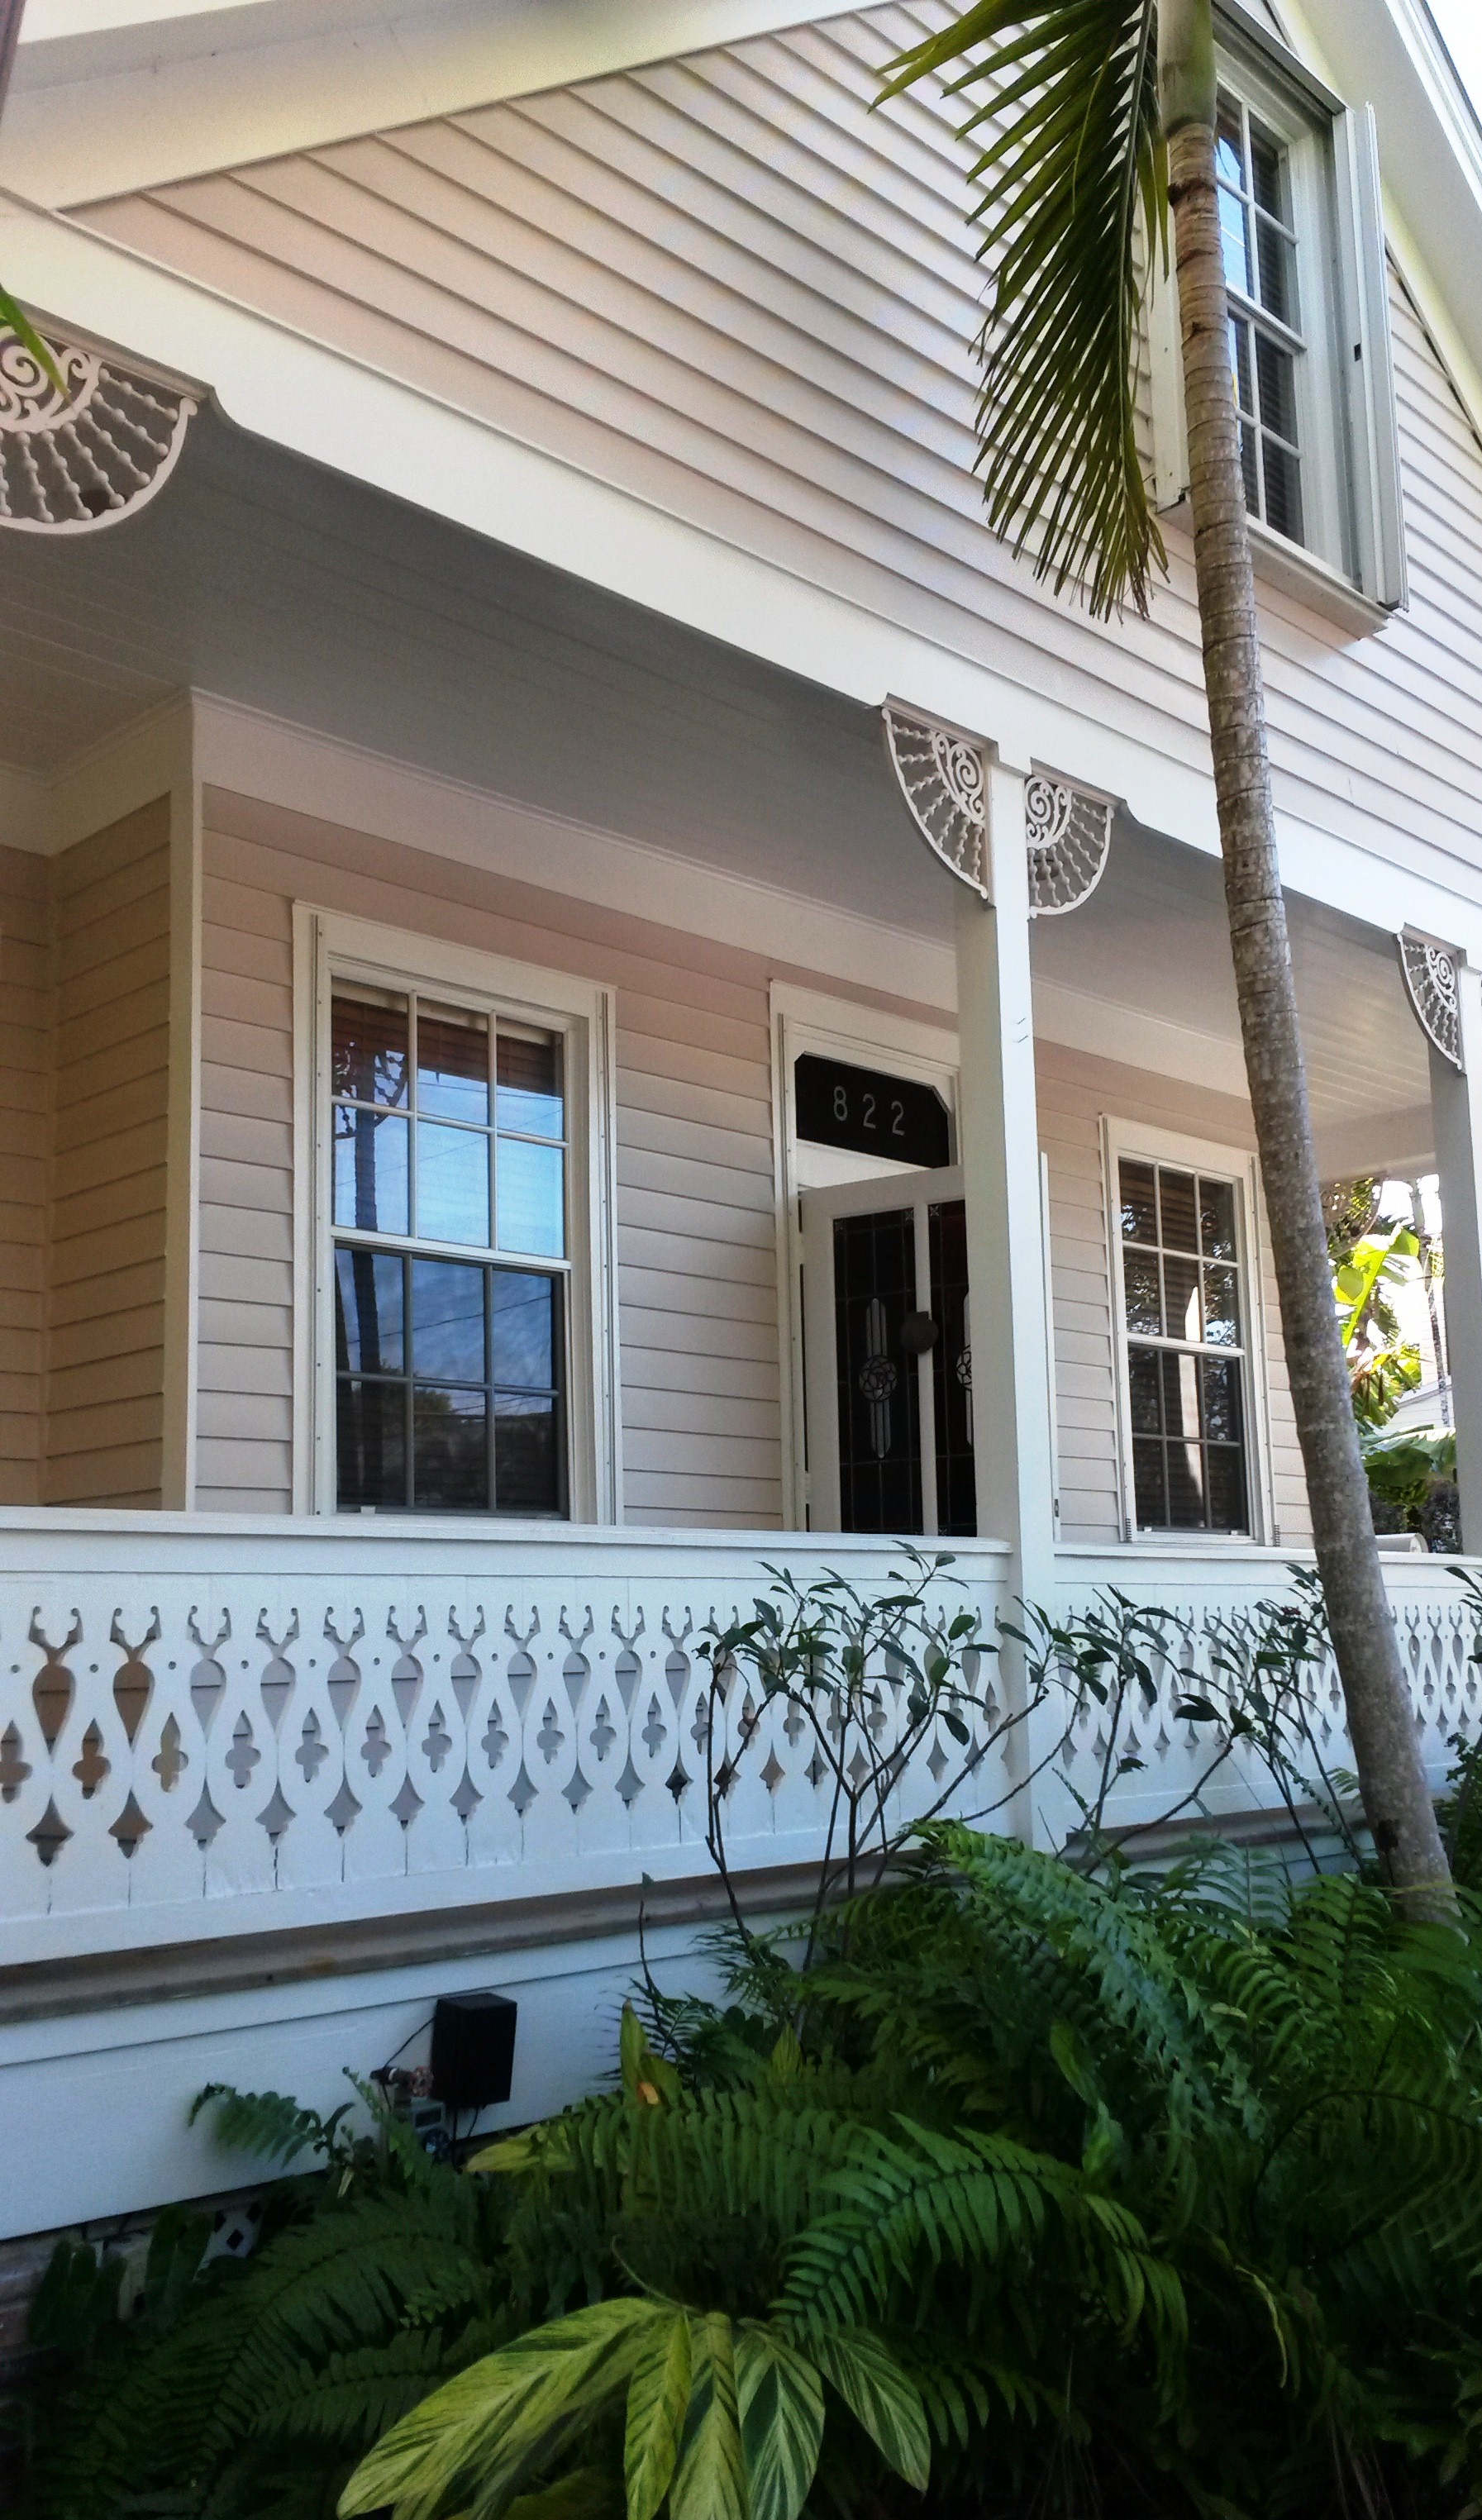 ORIF Historic House Tour, Key West, March 13-14